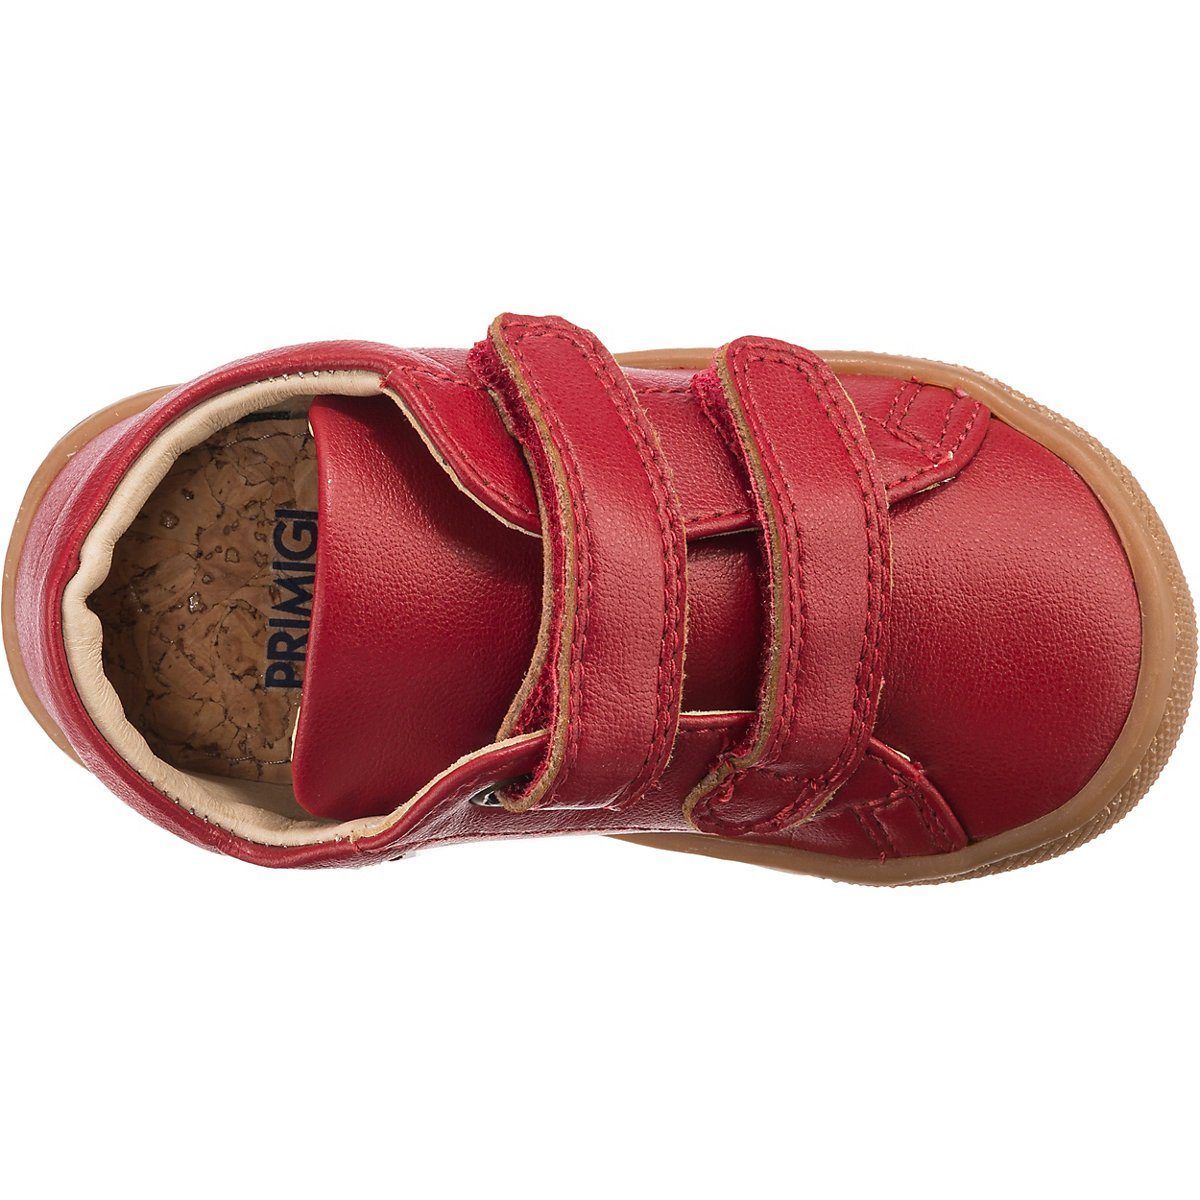 Schuhe Babyschuhe Mädchen Primigi Lauflernschuhe Lauflernschuh